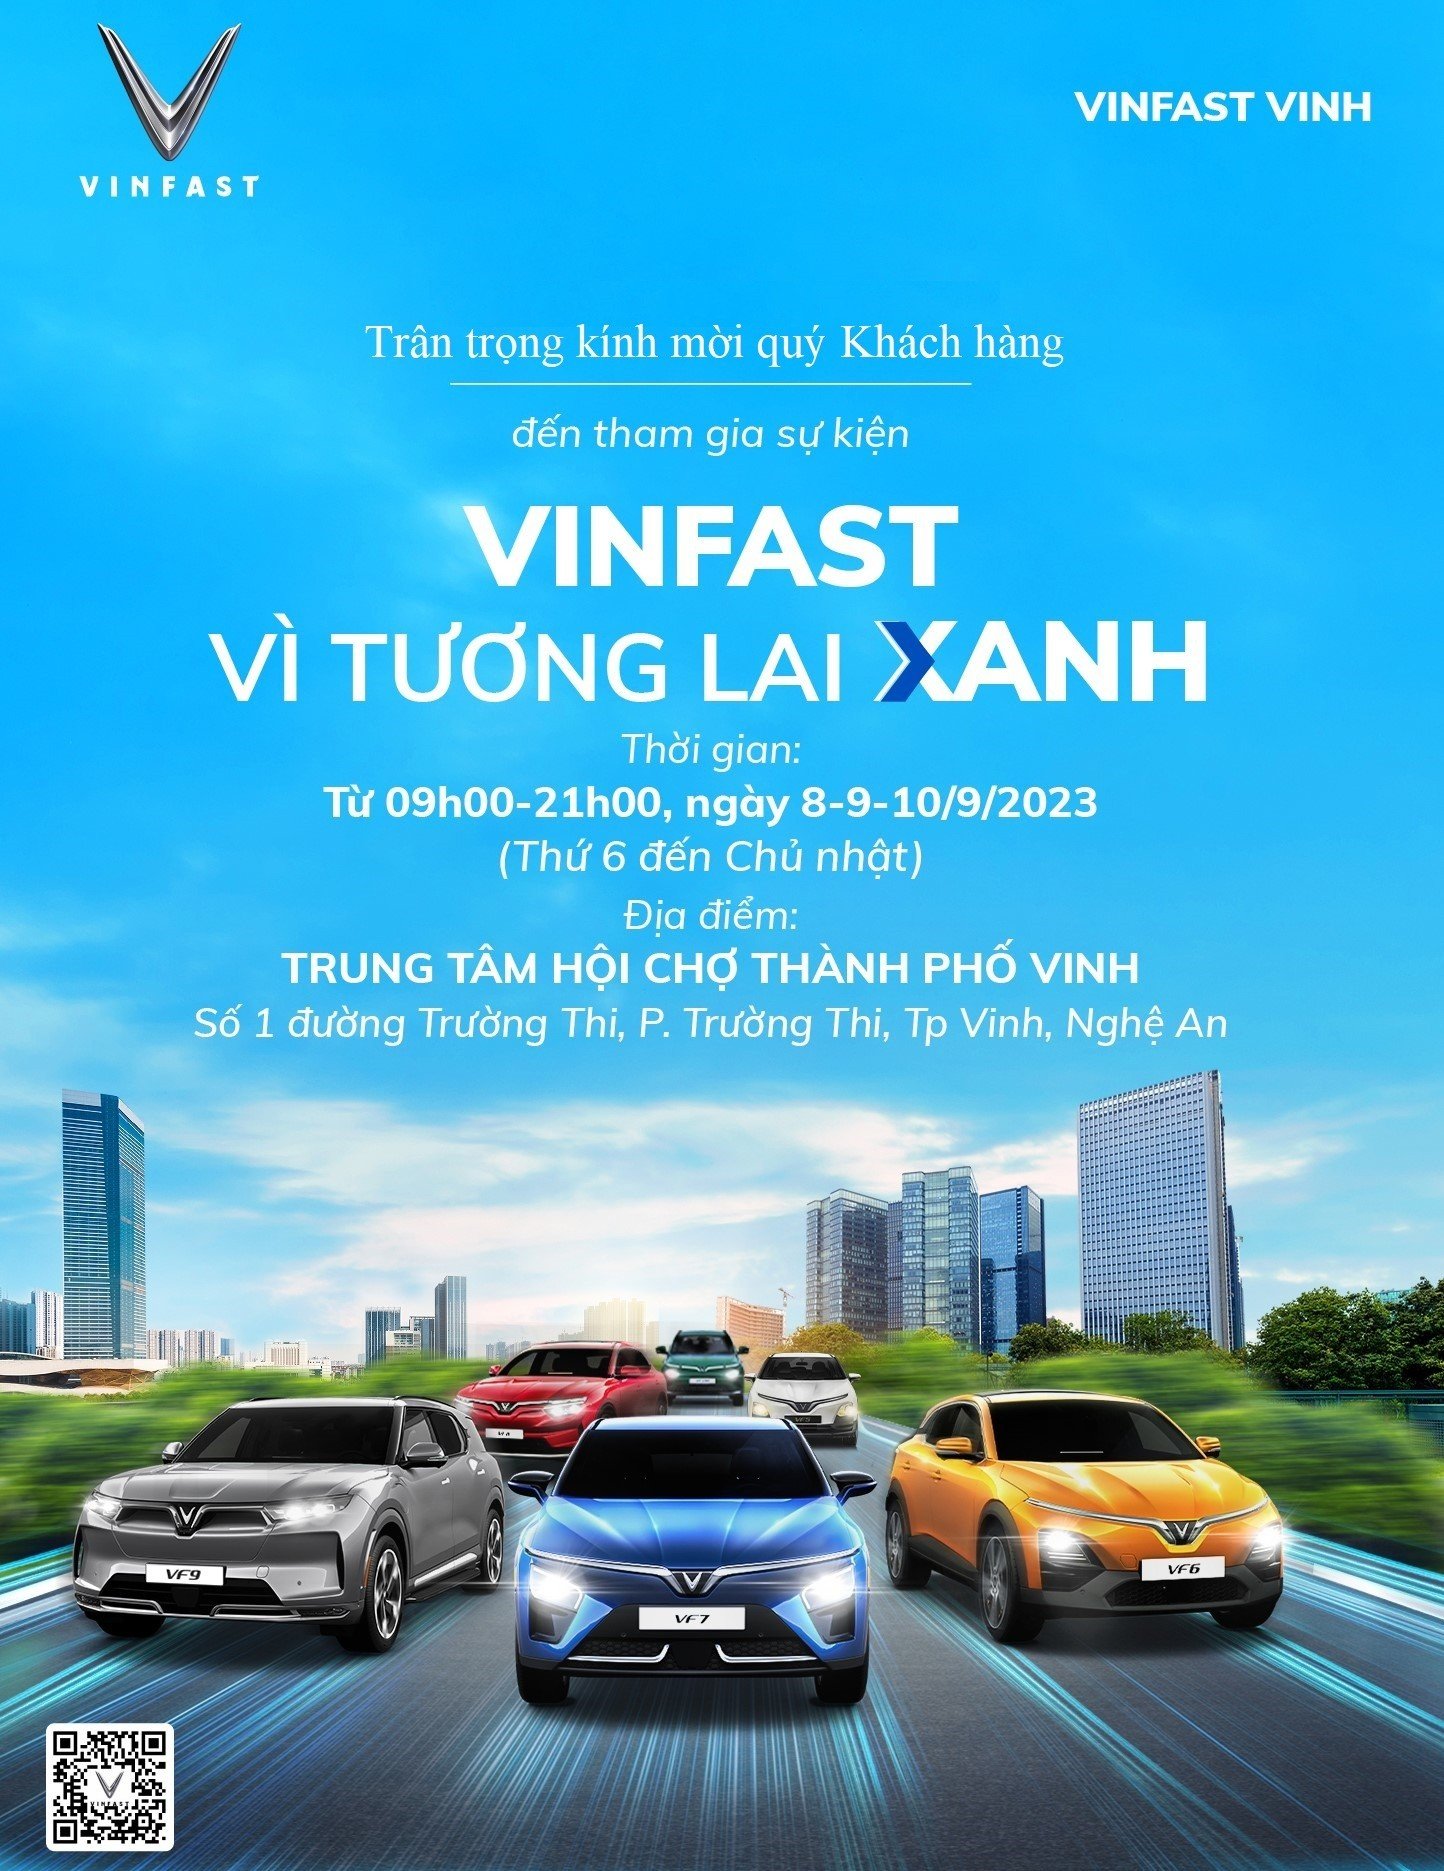 Triển lãm VinFast – Vì Tương Lai Xanh Tại Thành phố Vinh, Nghệ An